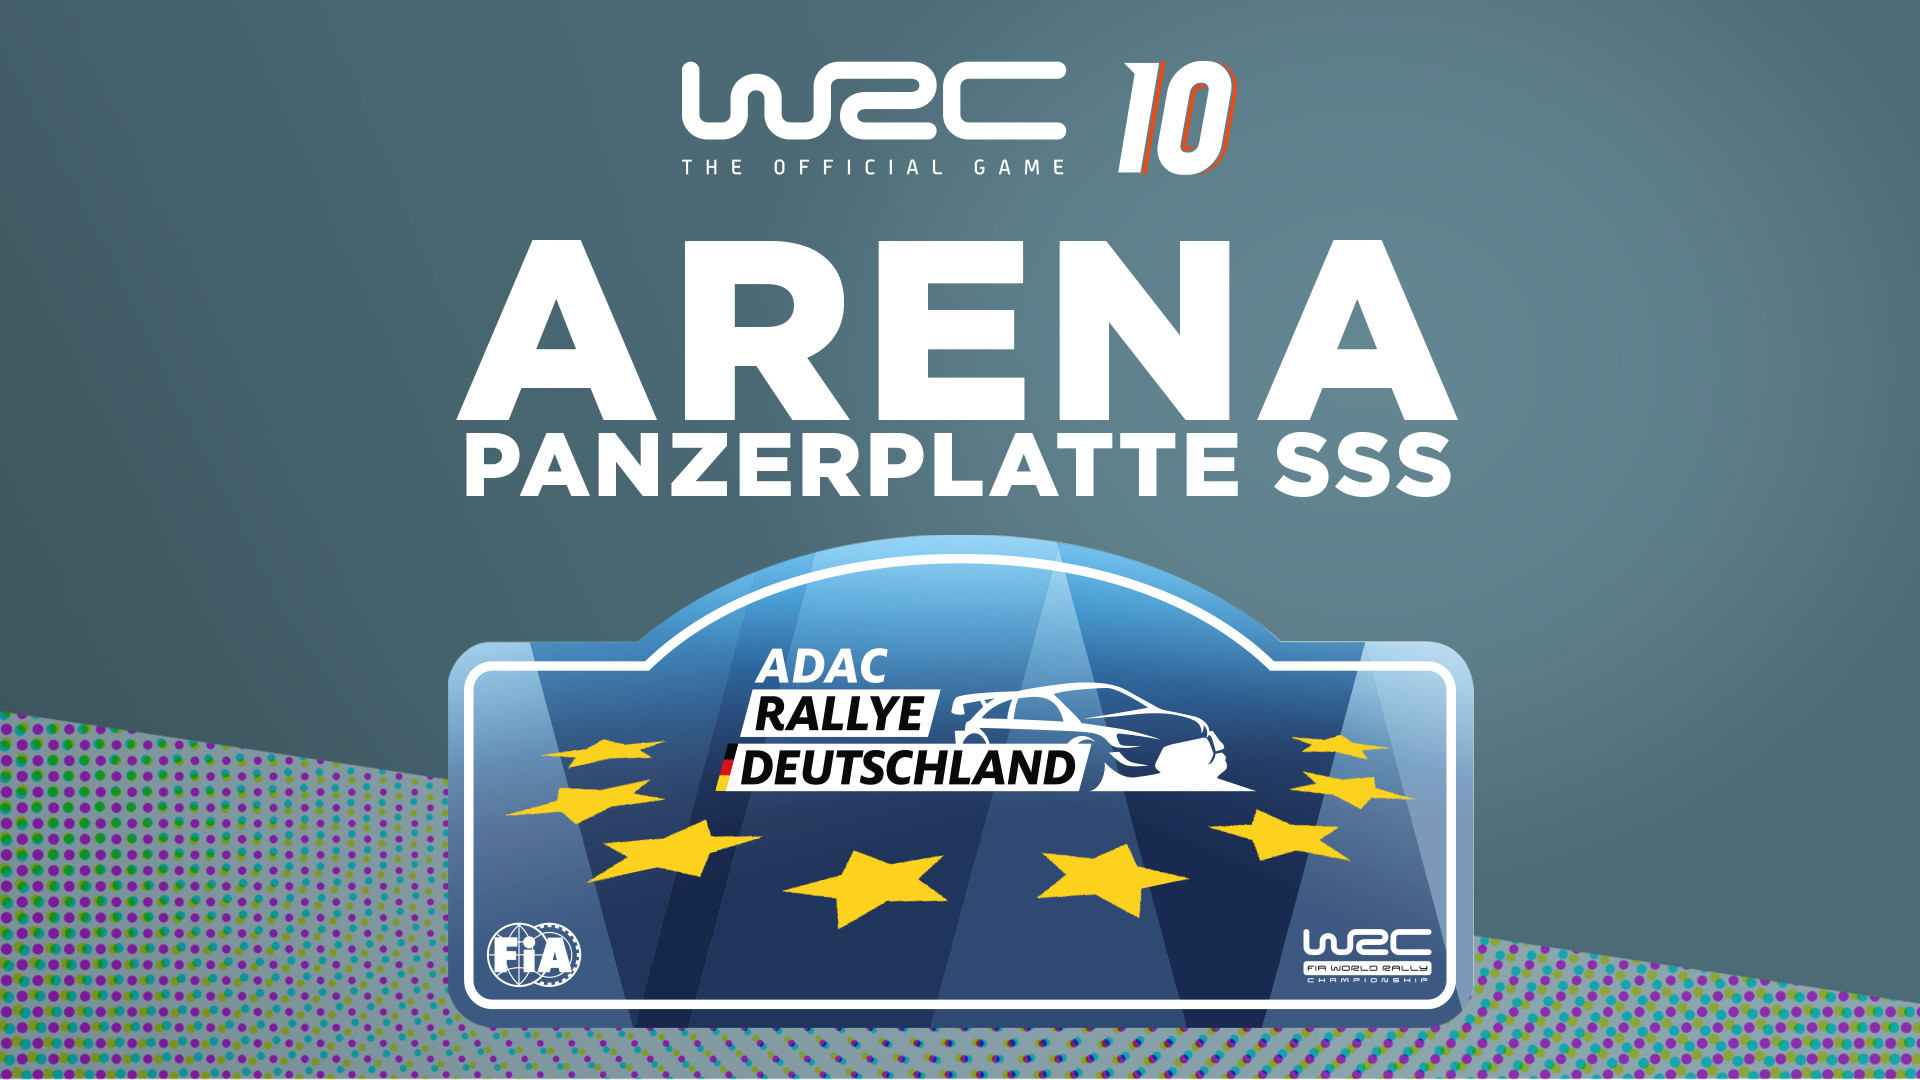 WRC 10 - Arena Panzerplatte SSS DLC Steam CD Key [USD 4.51]